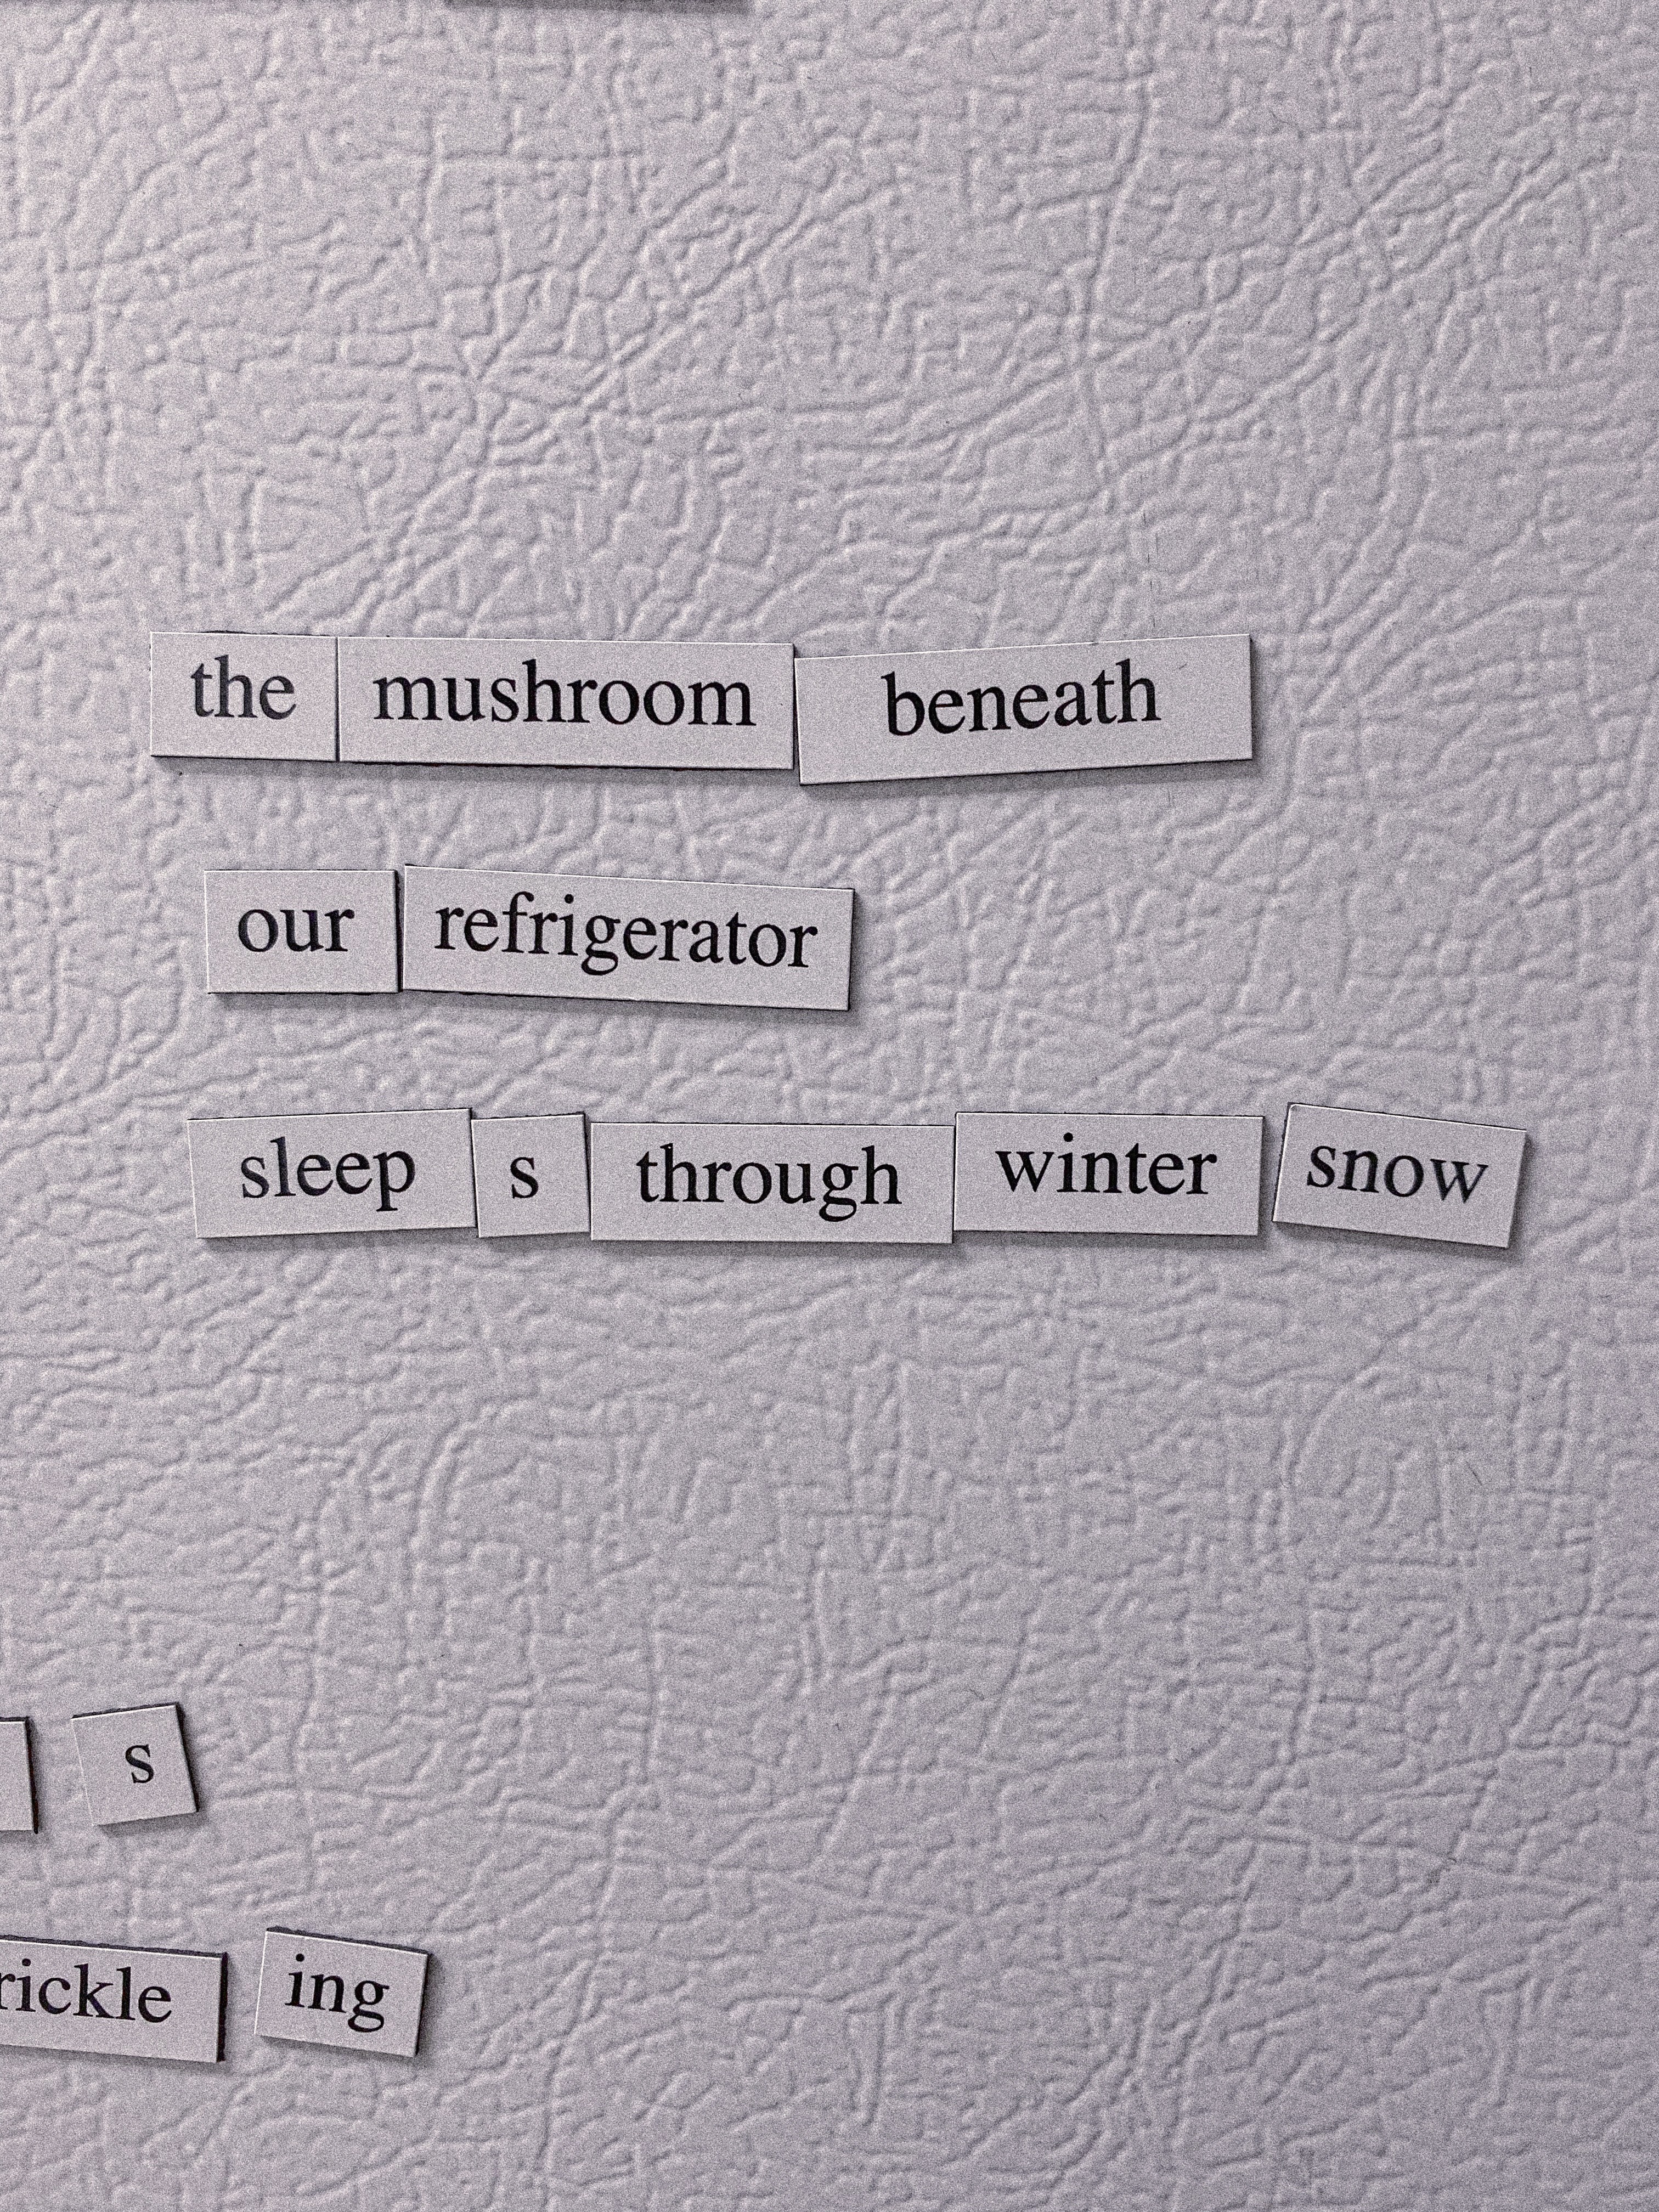 fridge haiku